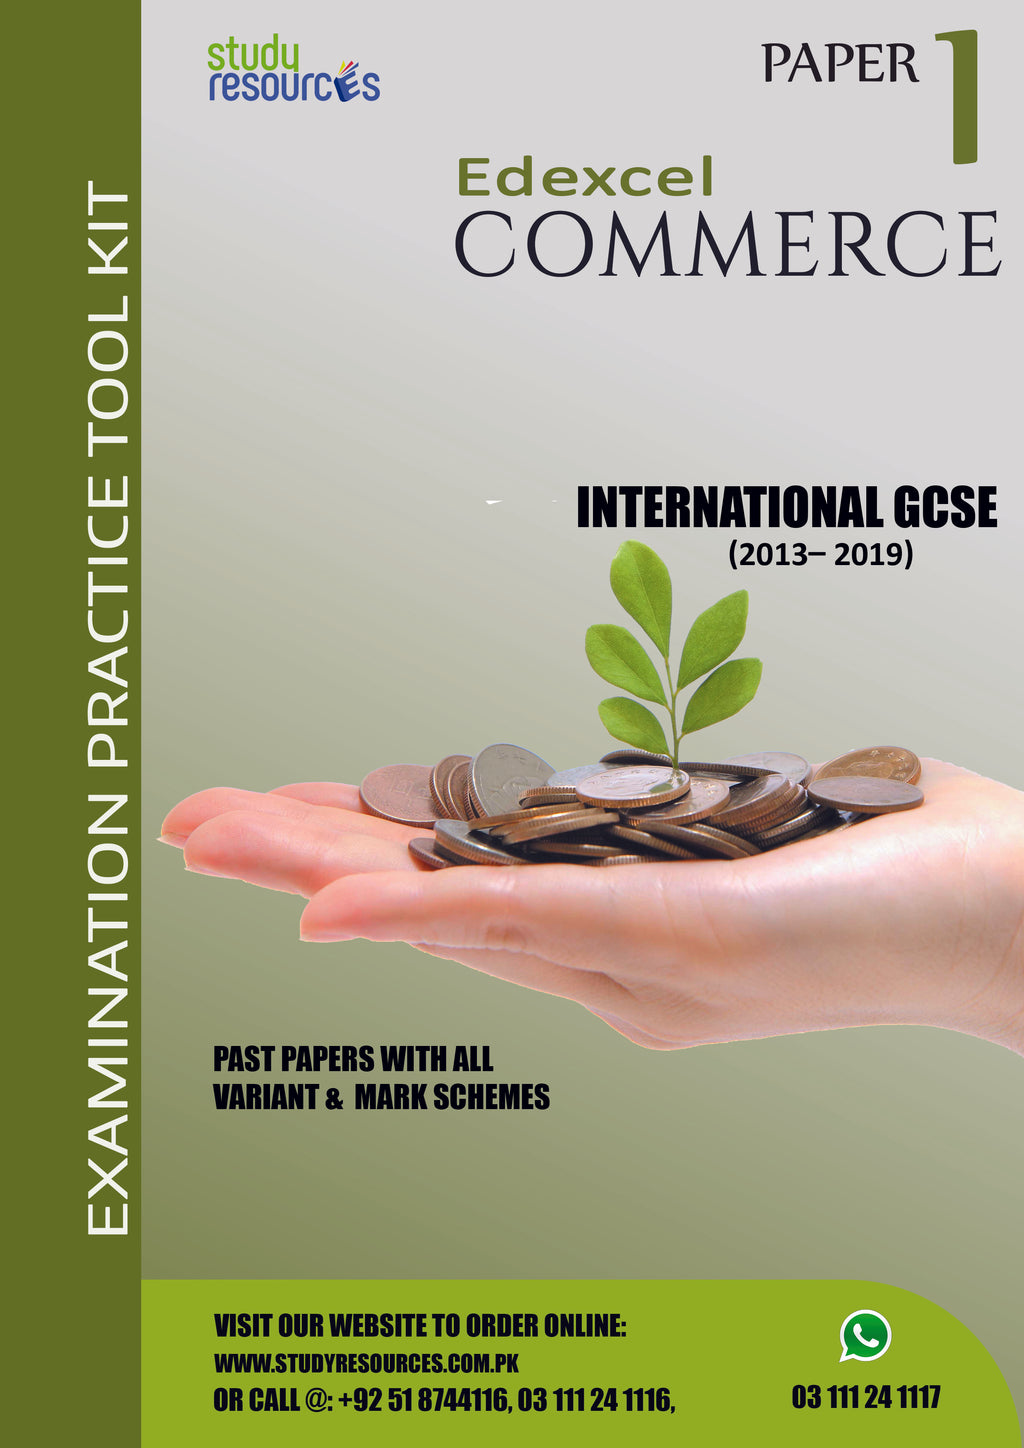 Edexcel IGCSE Commerce Paper-1 Past Papers (2013-2019)